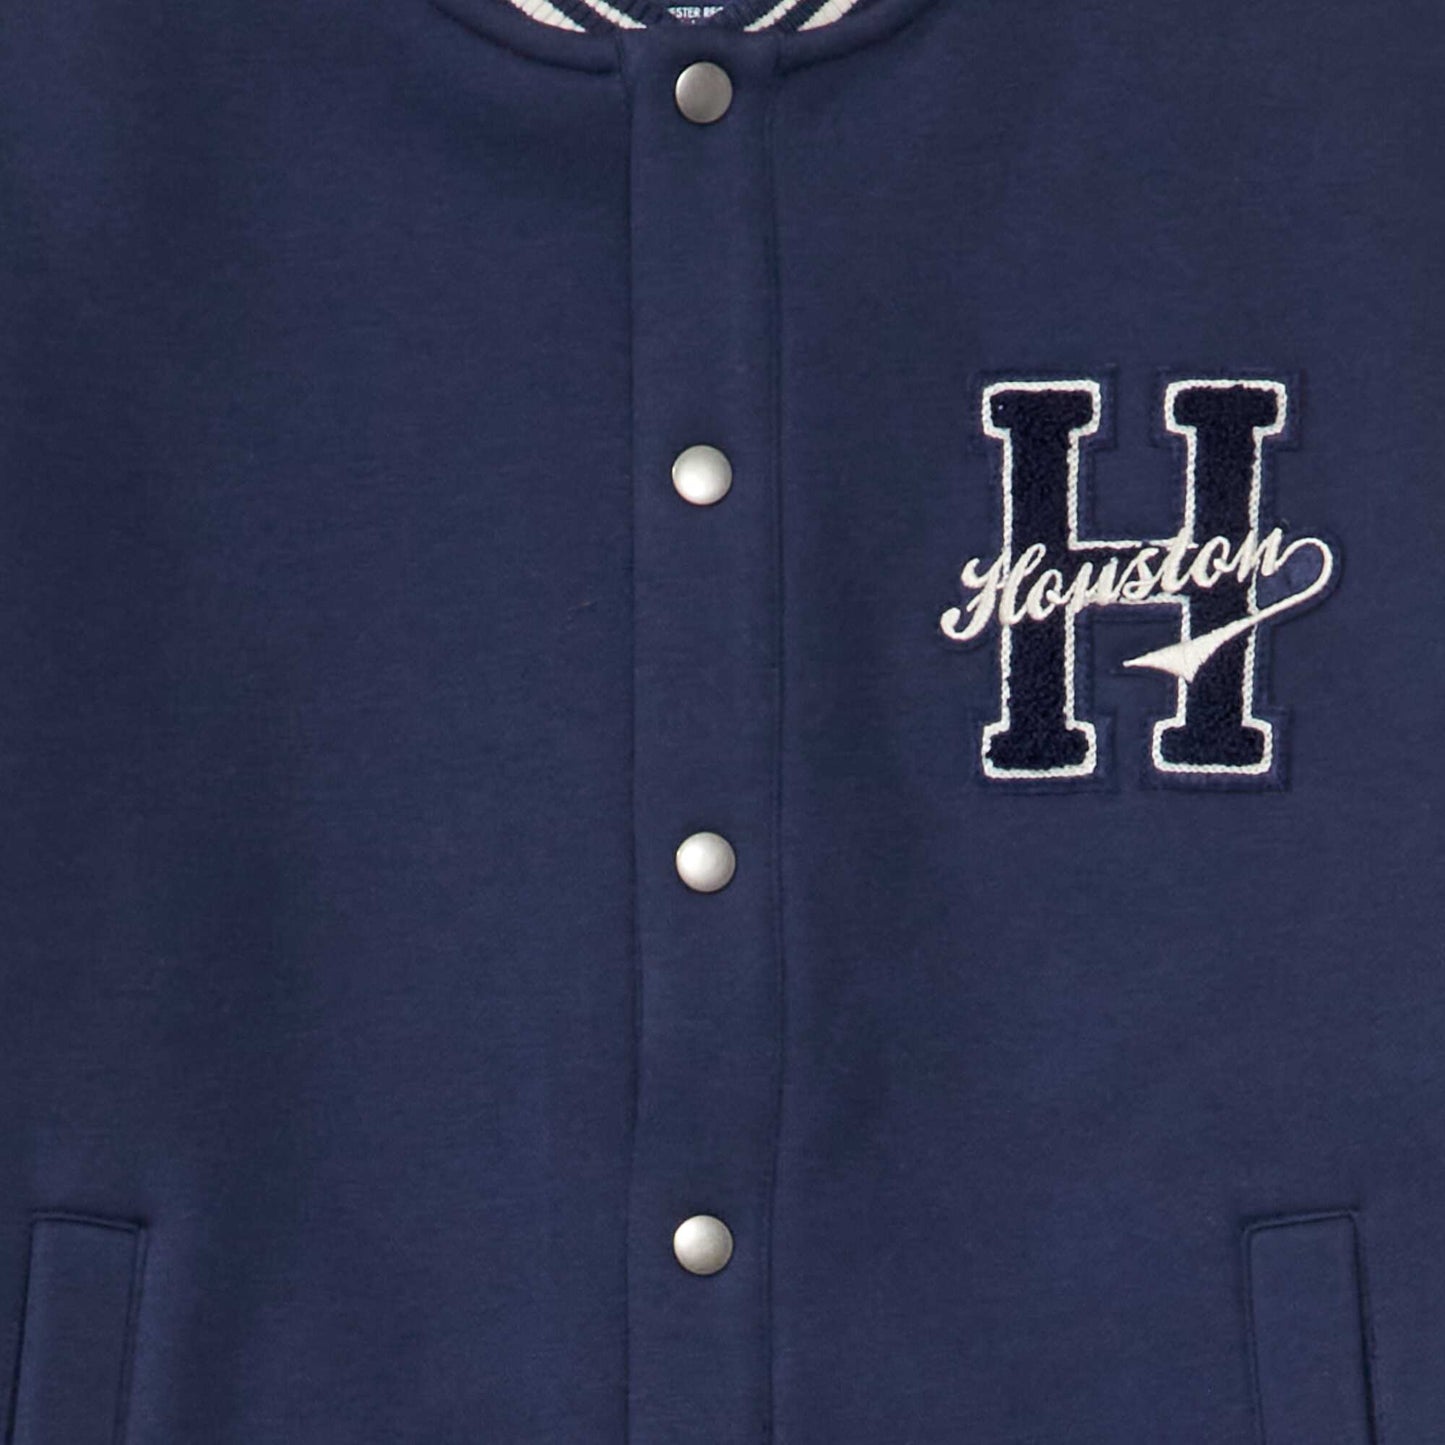 Varsity-style sweatshirt fabric jacket Blue